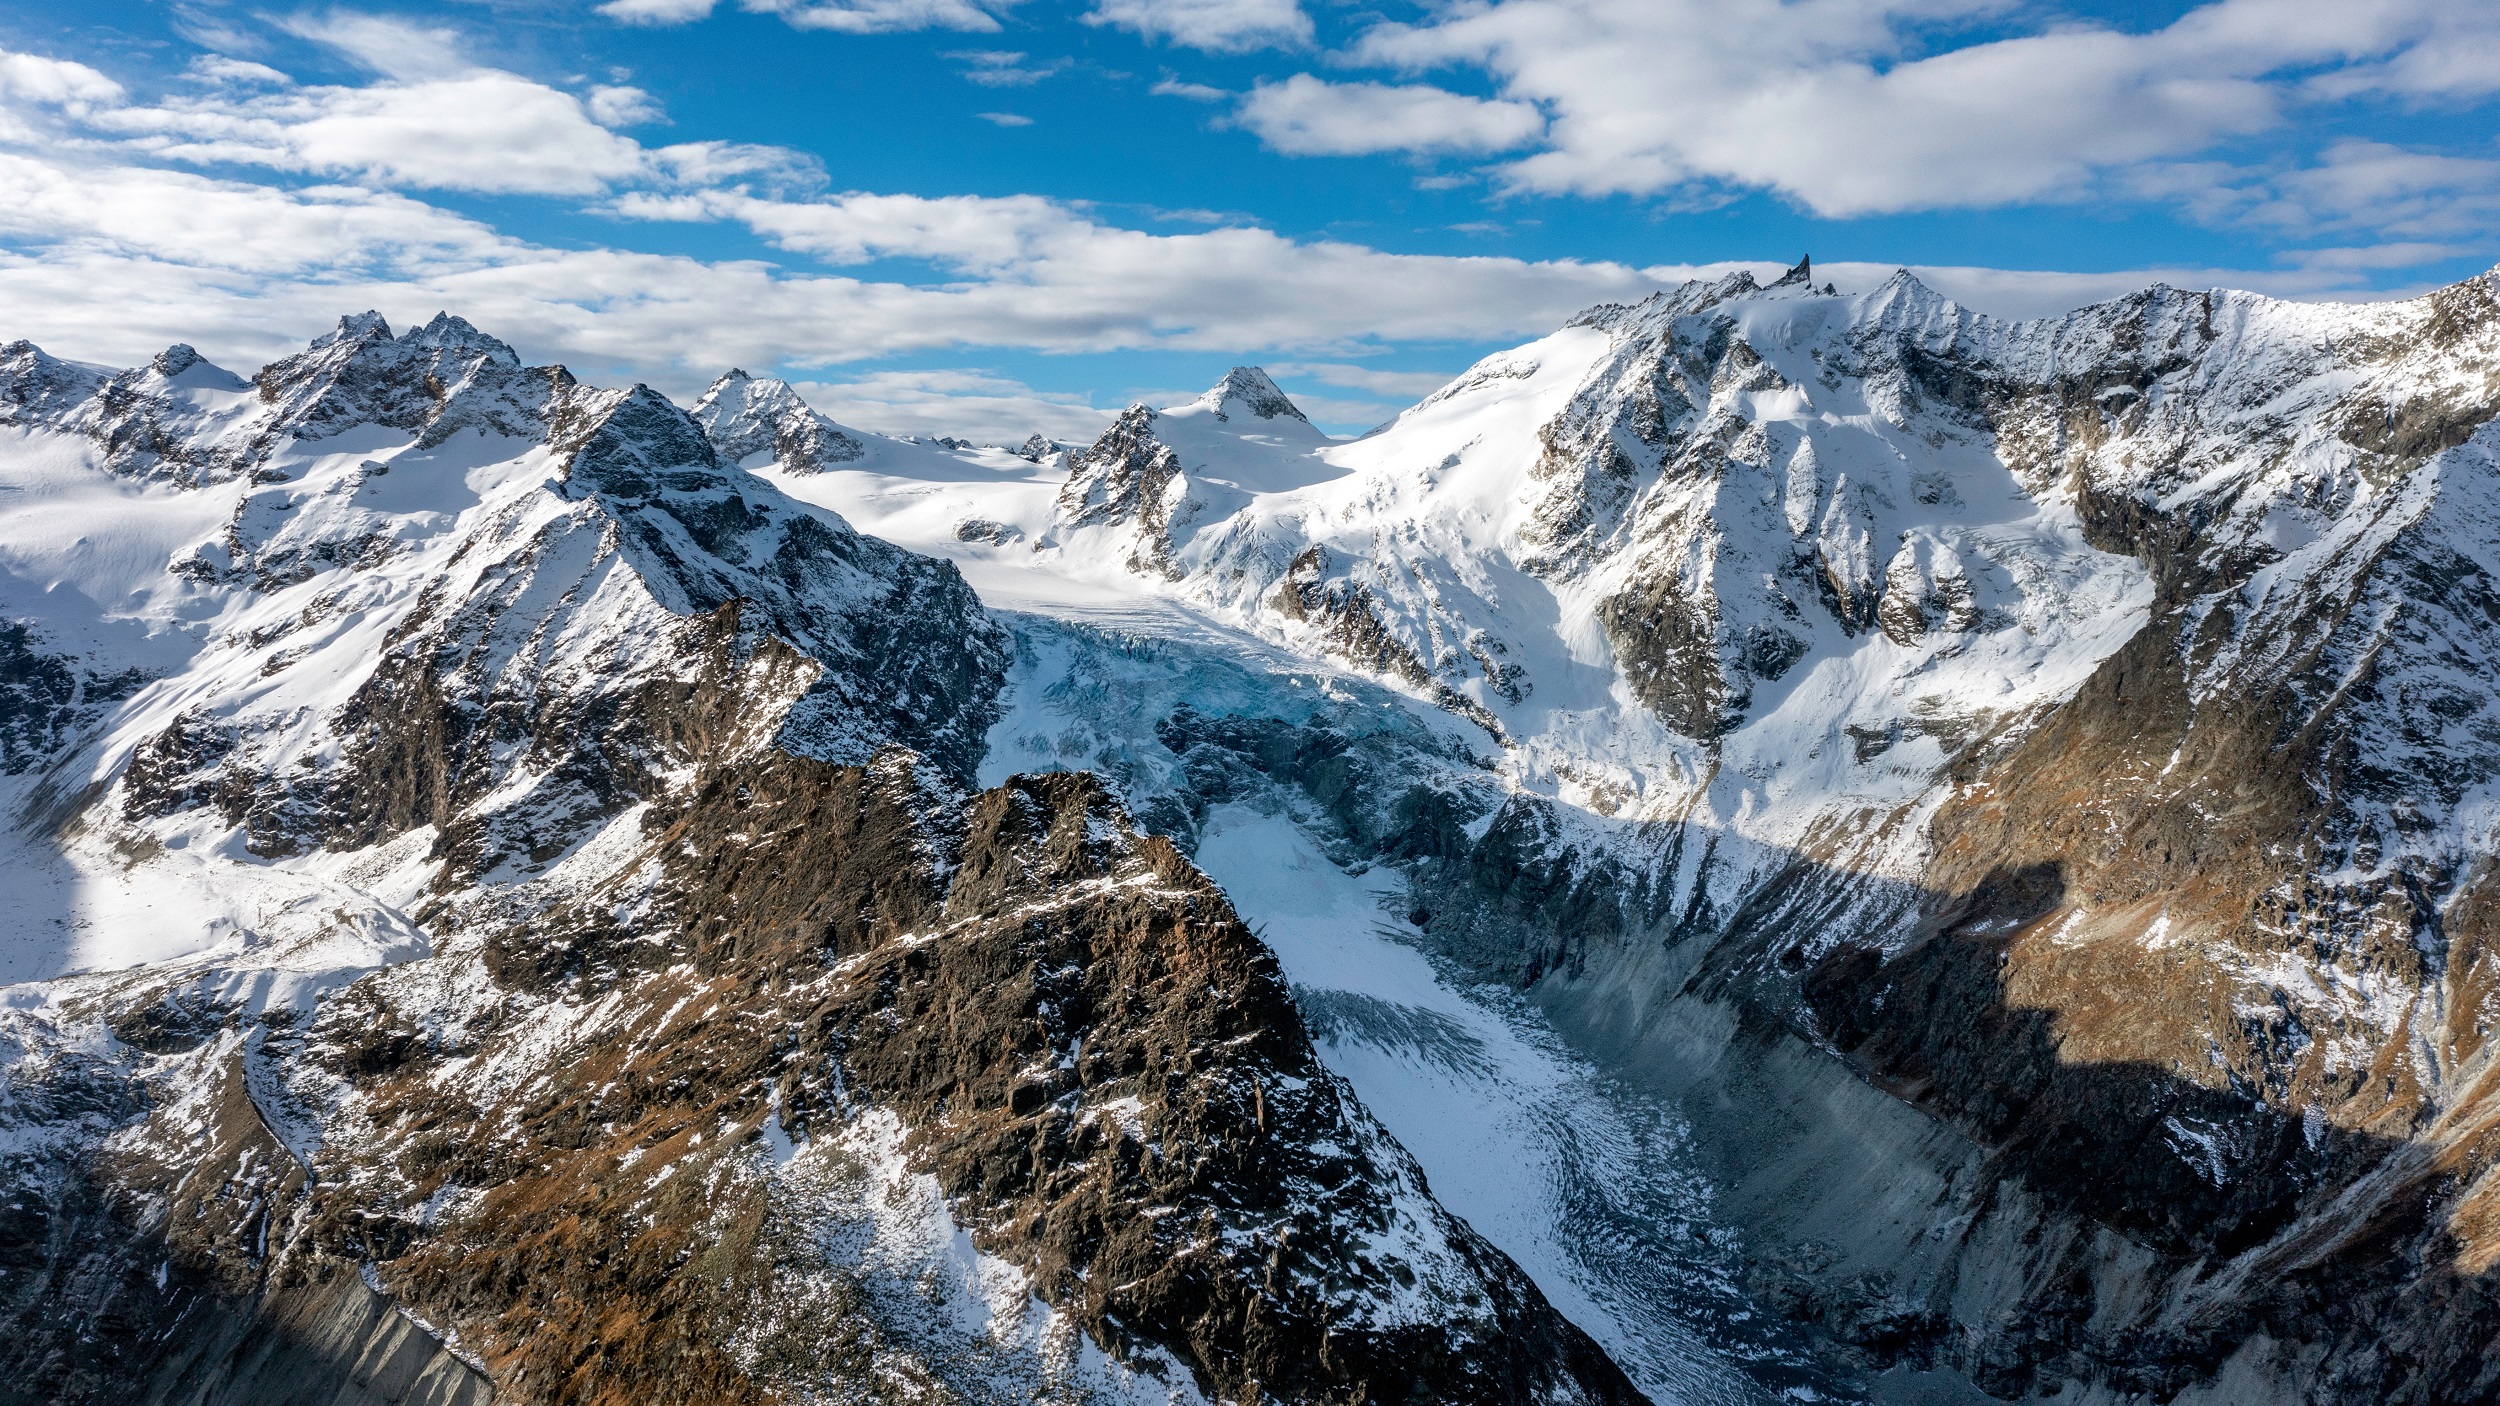 Les fortes chaleurs en montagne fragilisent les glaciers et augmentent le risque d'effondrements plusieurs mois après. © Bergimus communicati, Adobe Stock